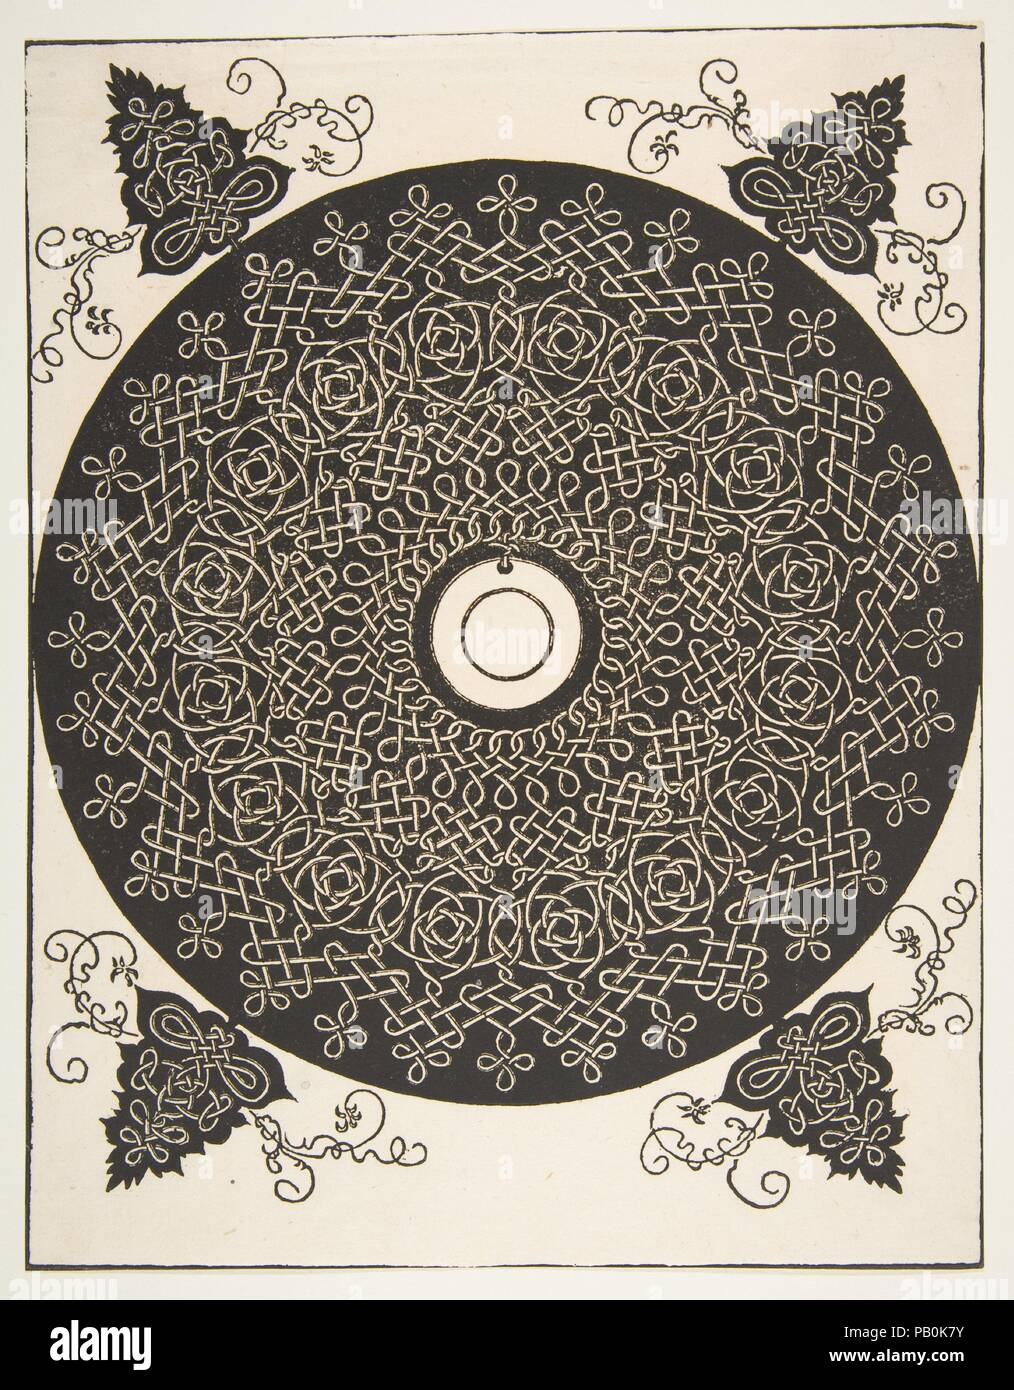 "Le quatrième Nœud'. Cocarde entrelacé avec un médaillon rond en son centre. Artiste : Albrecht Dürer (Nuremberg, Allemagne Nuremberg 1471-1528) ; Après l'italien Léonard de Vinci (1452-1519), Vinci Amboise (ou atelier). Fiche technique : Dimensions : 10 3/4 x 8 3/8 in. (27,3 x 21,2 cm). Date : avant 1521. Motif de broderie faite hors de soi-disant travail de noeud. Le principal motif a une forme circulaire et est présenté en blanc sur un sol foncé. Les cordes nouées ou les sangles sont disposées dans des dispositions différentes pour former quatre niveaux qui entourent le motif central qui est une vierge, médaillon circulaire. Sur les quatre extra-corne Banque D'Images